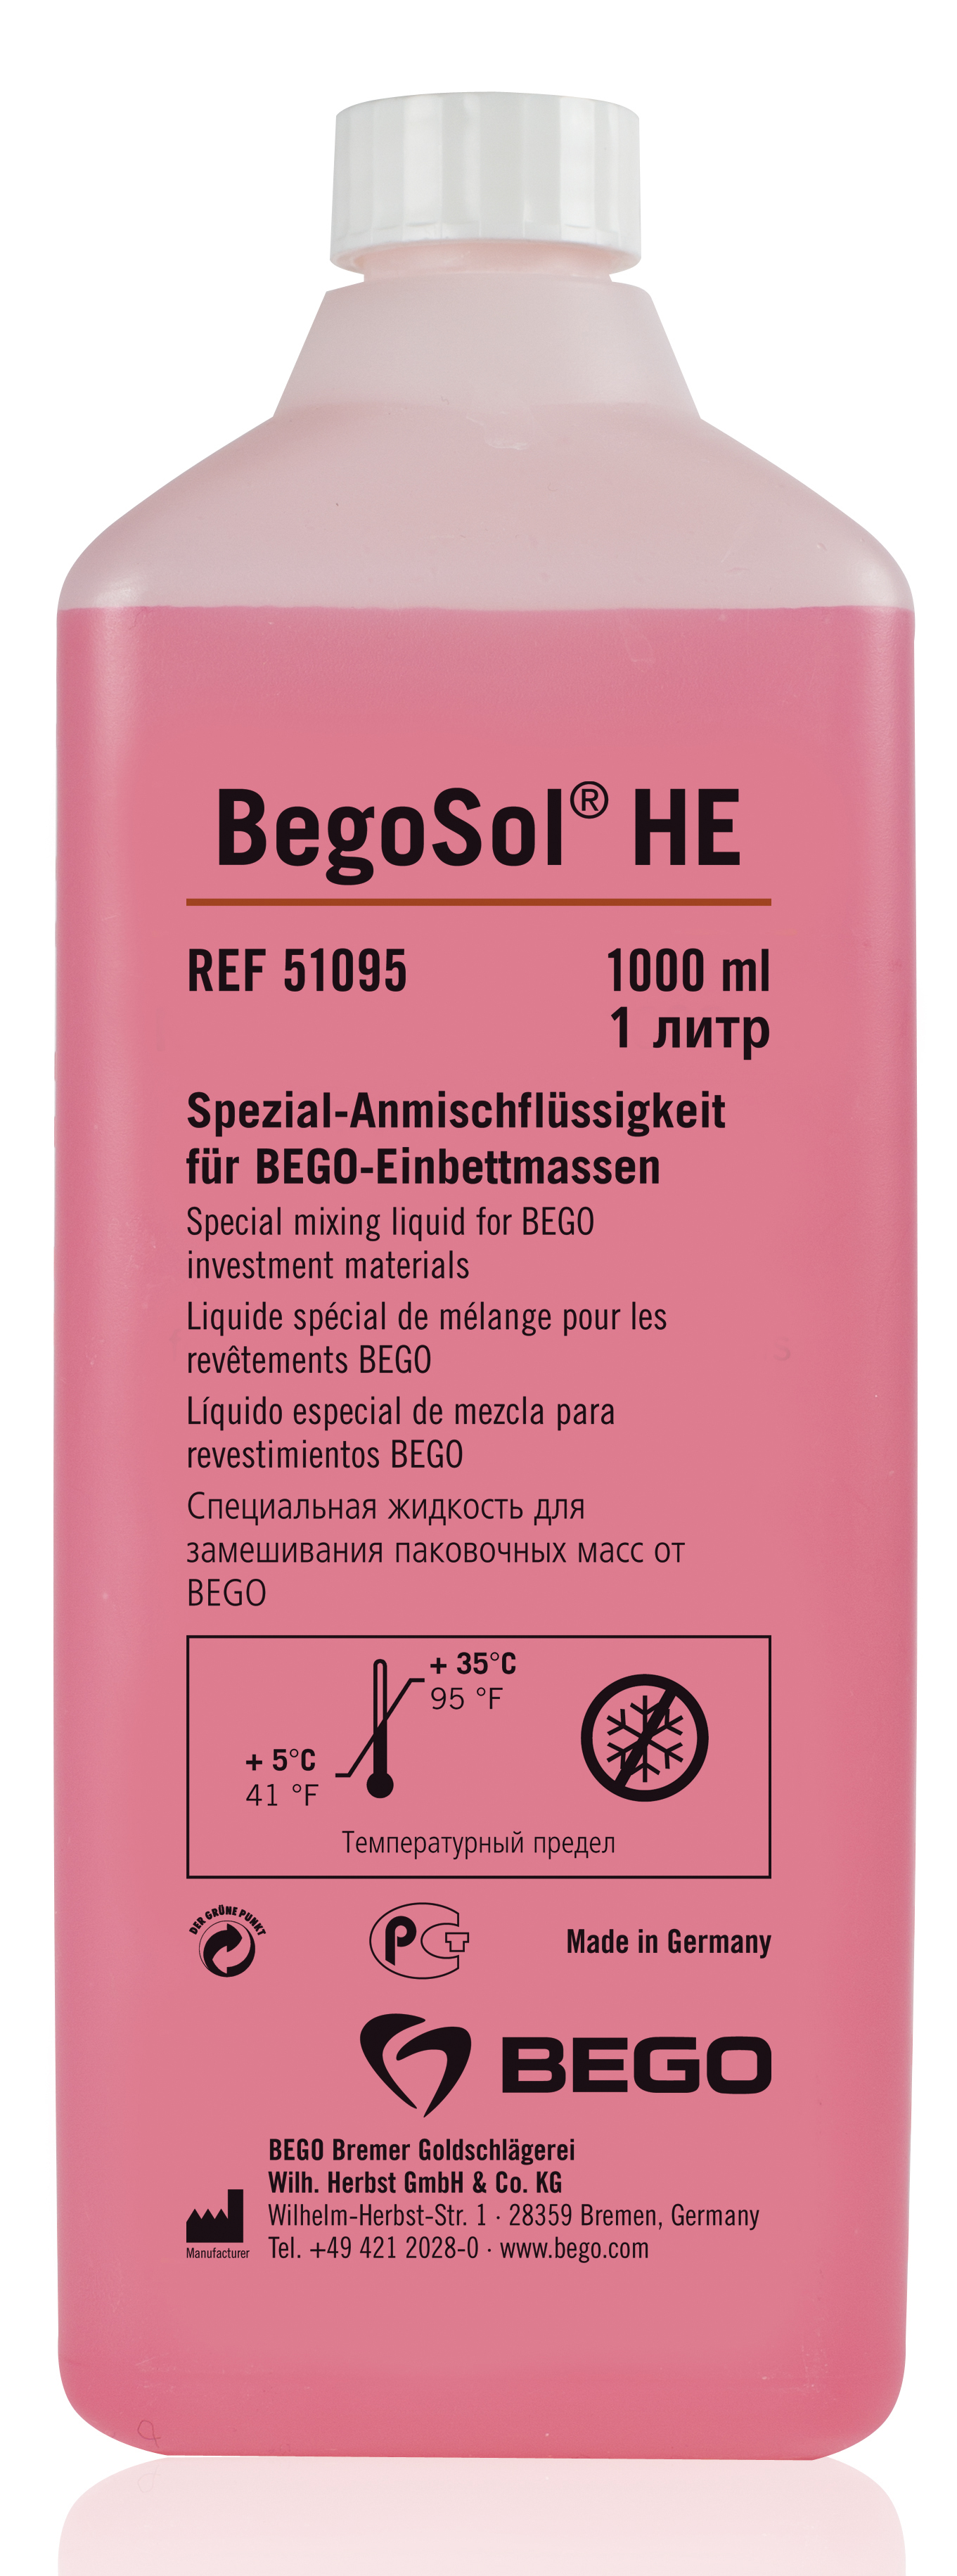 Жидкость BegoSol HE для паковочной массы (1 л) Bego 51095